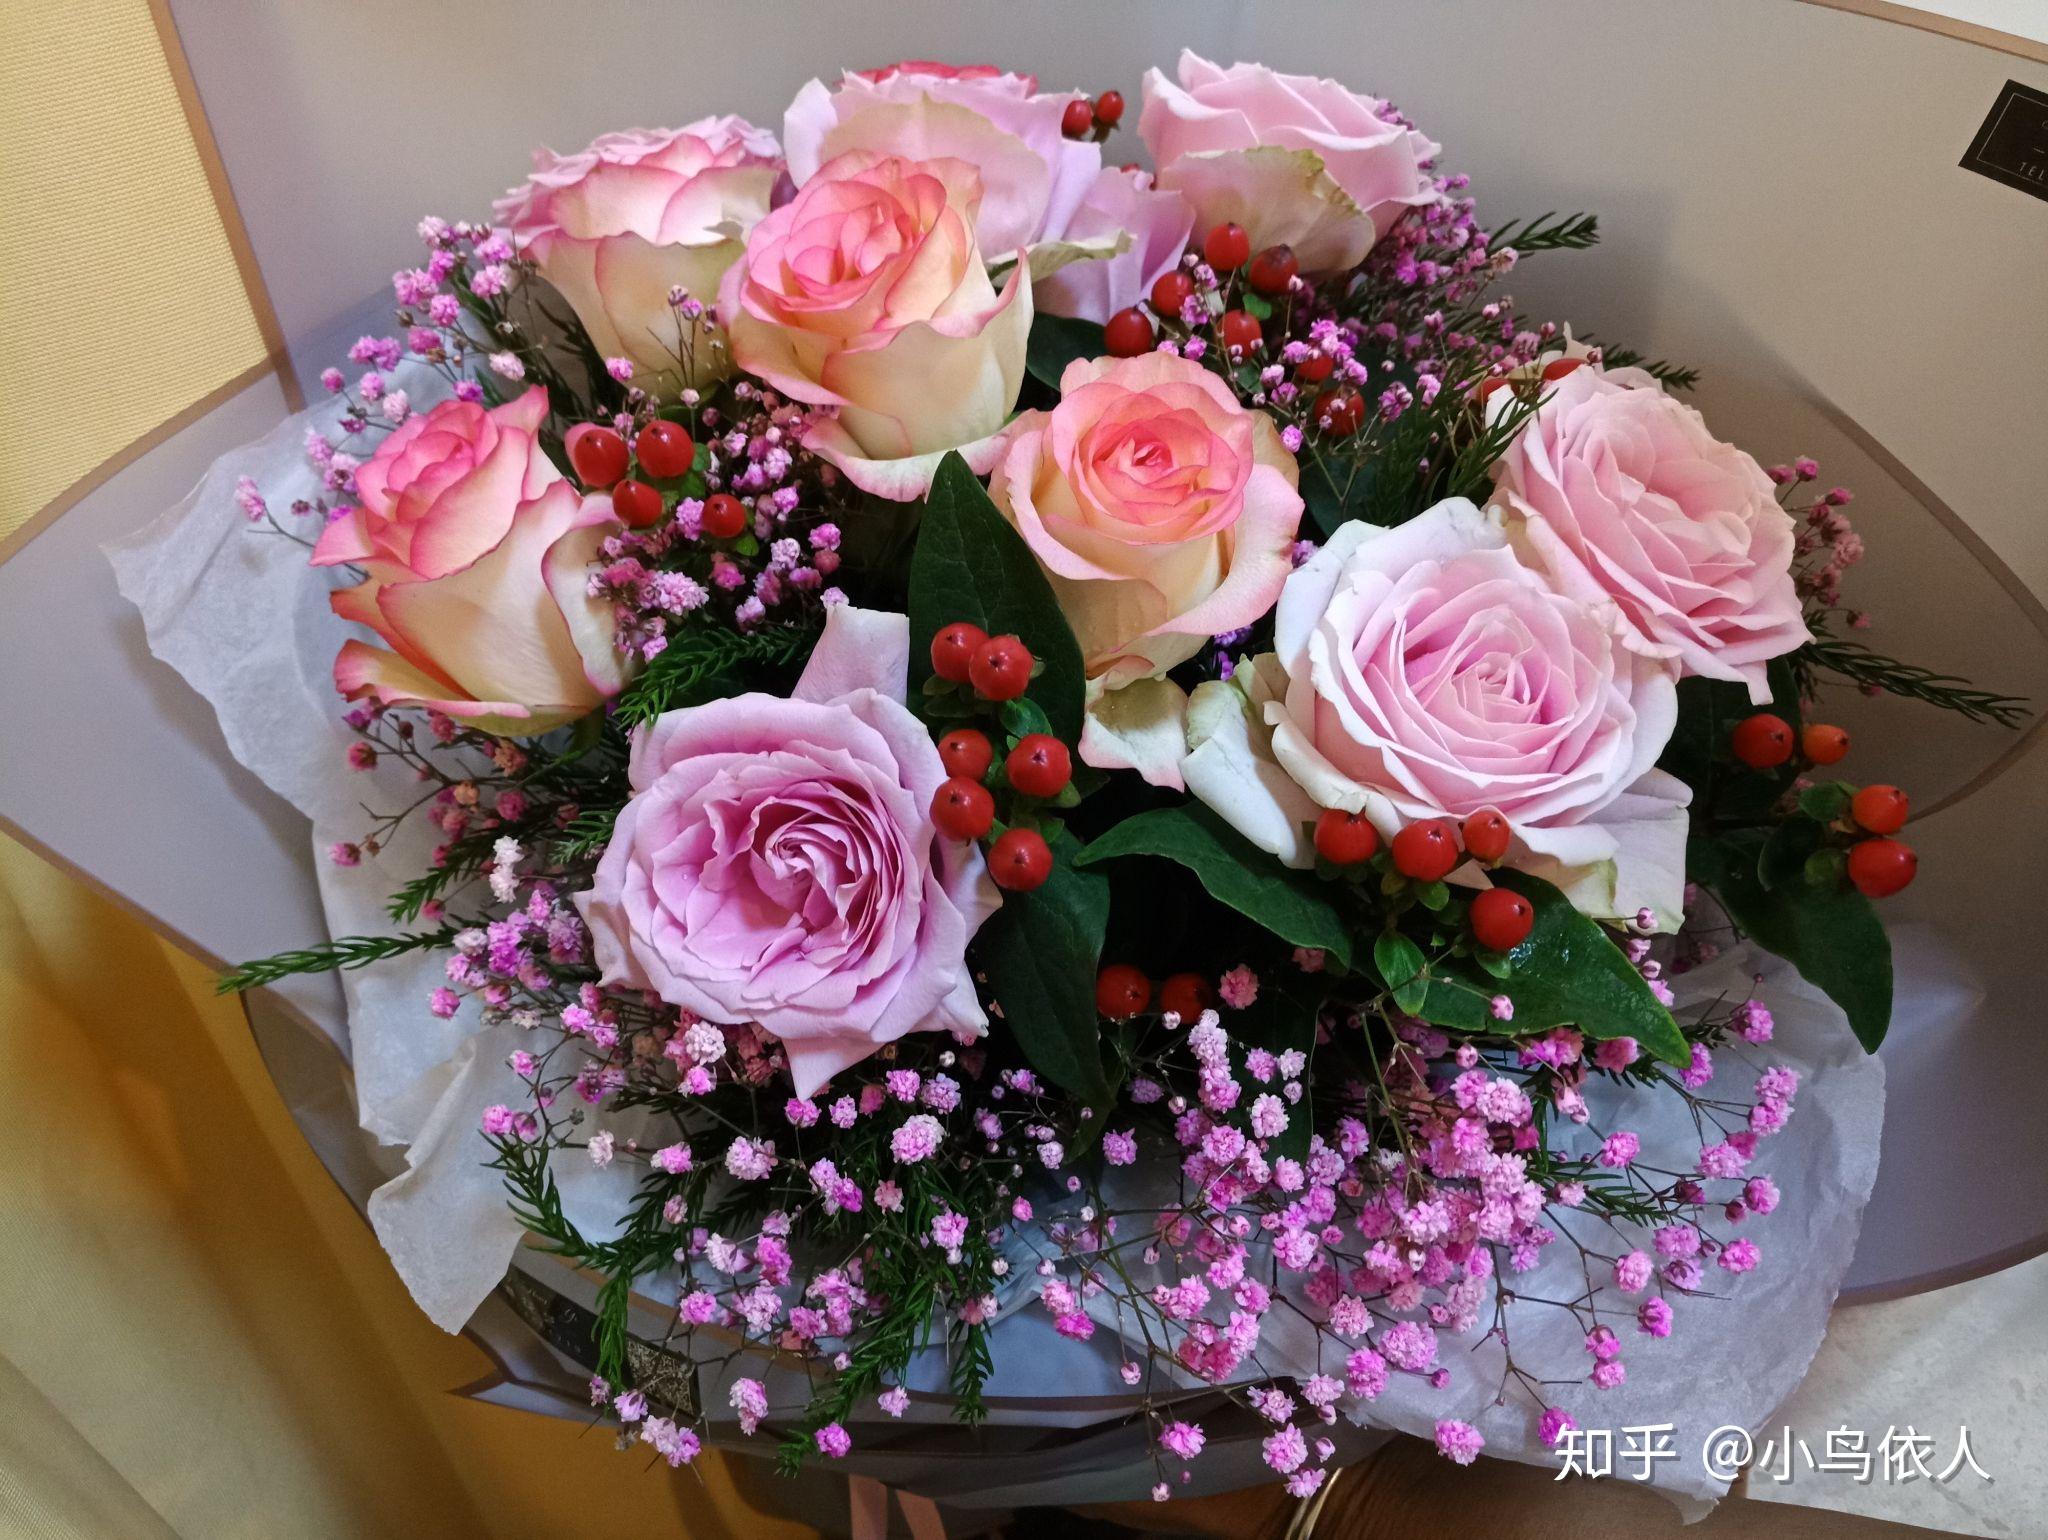 女人生完孩子从产房出来的那一刻,她老公送她一束玫瑰花,女人会很感动